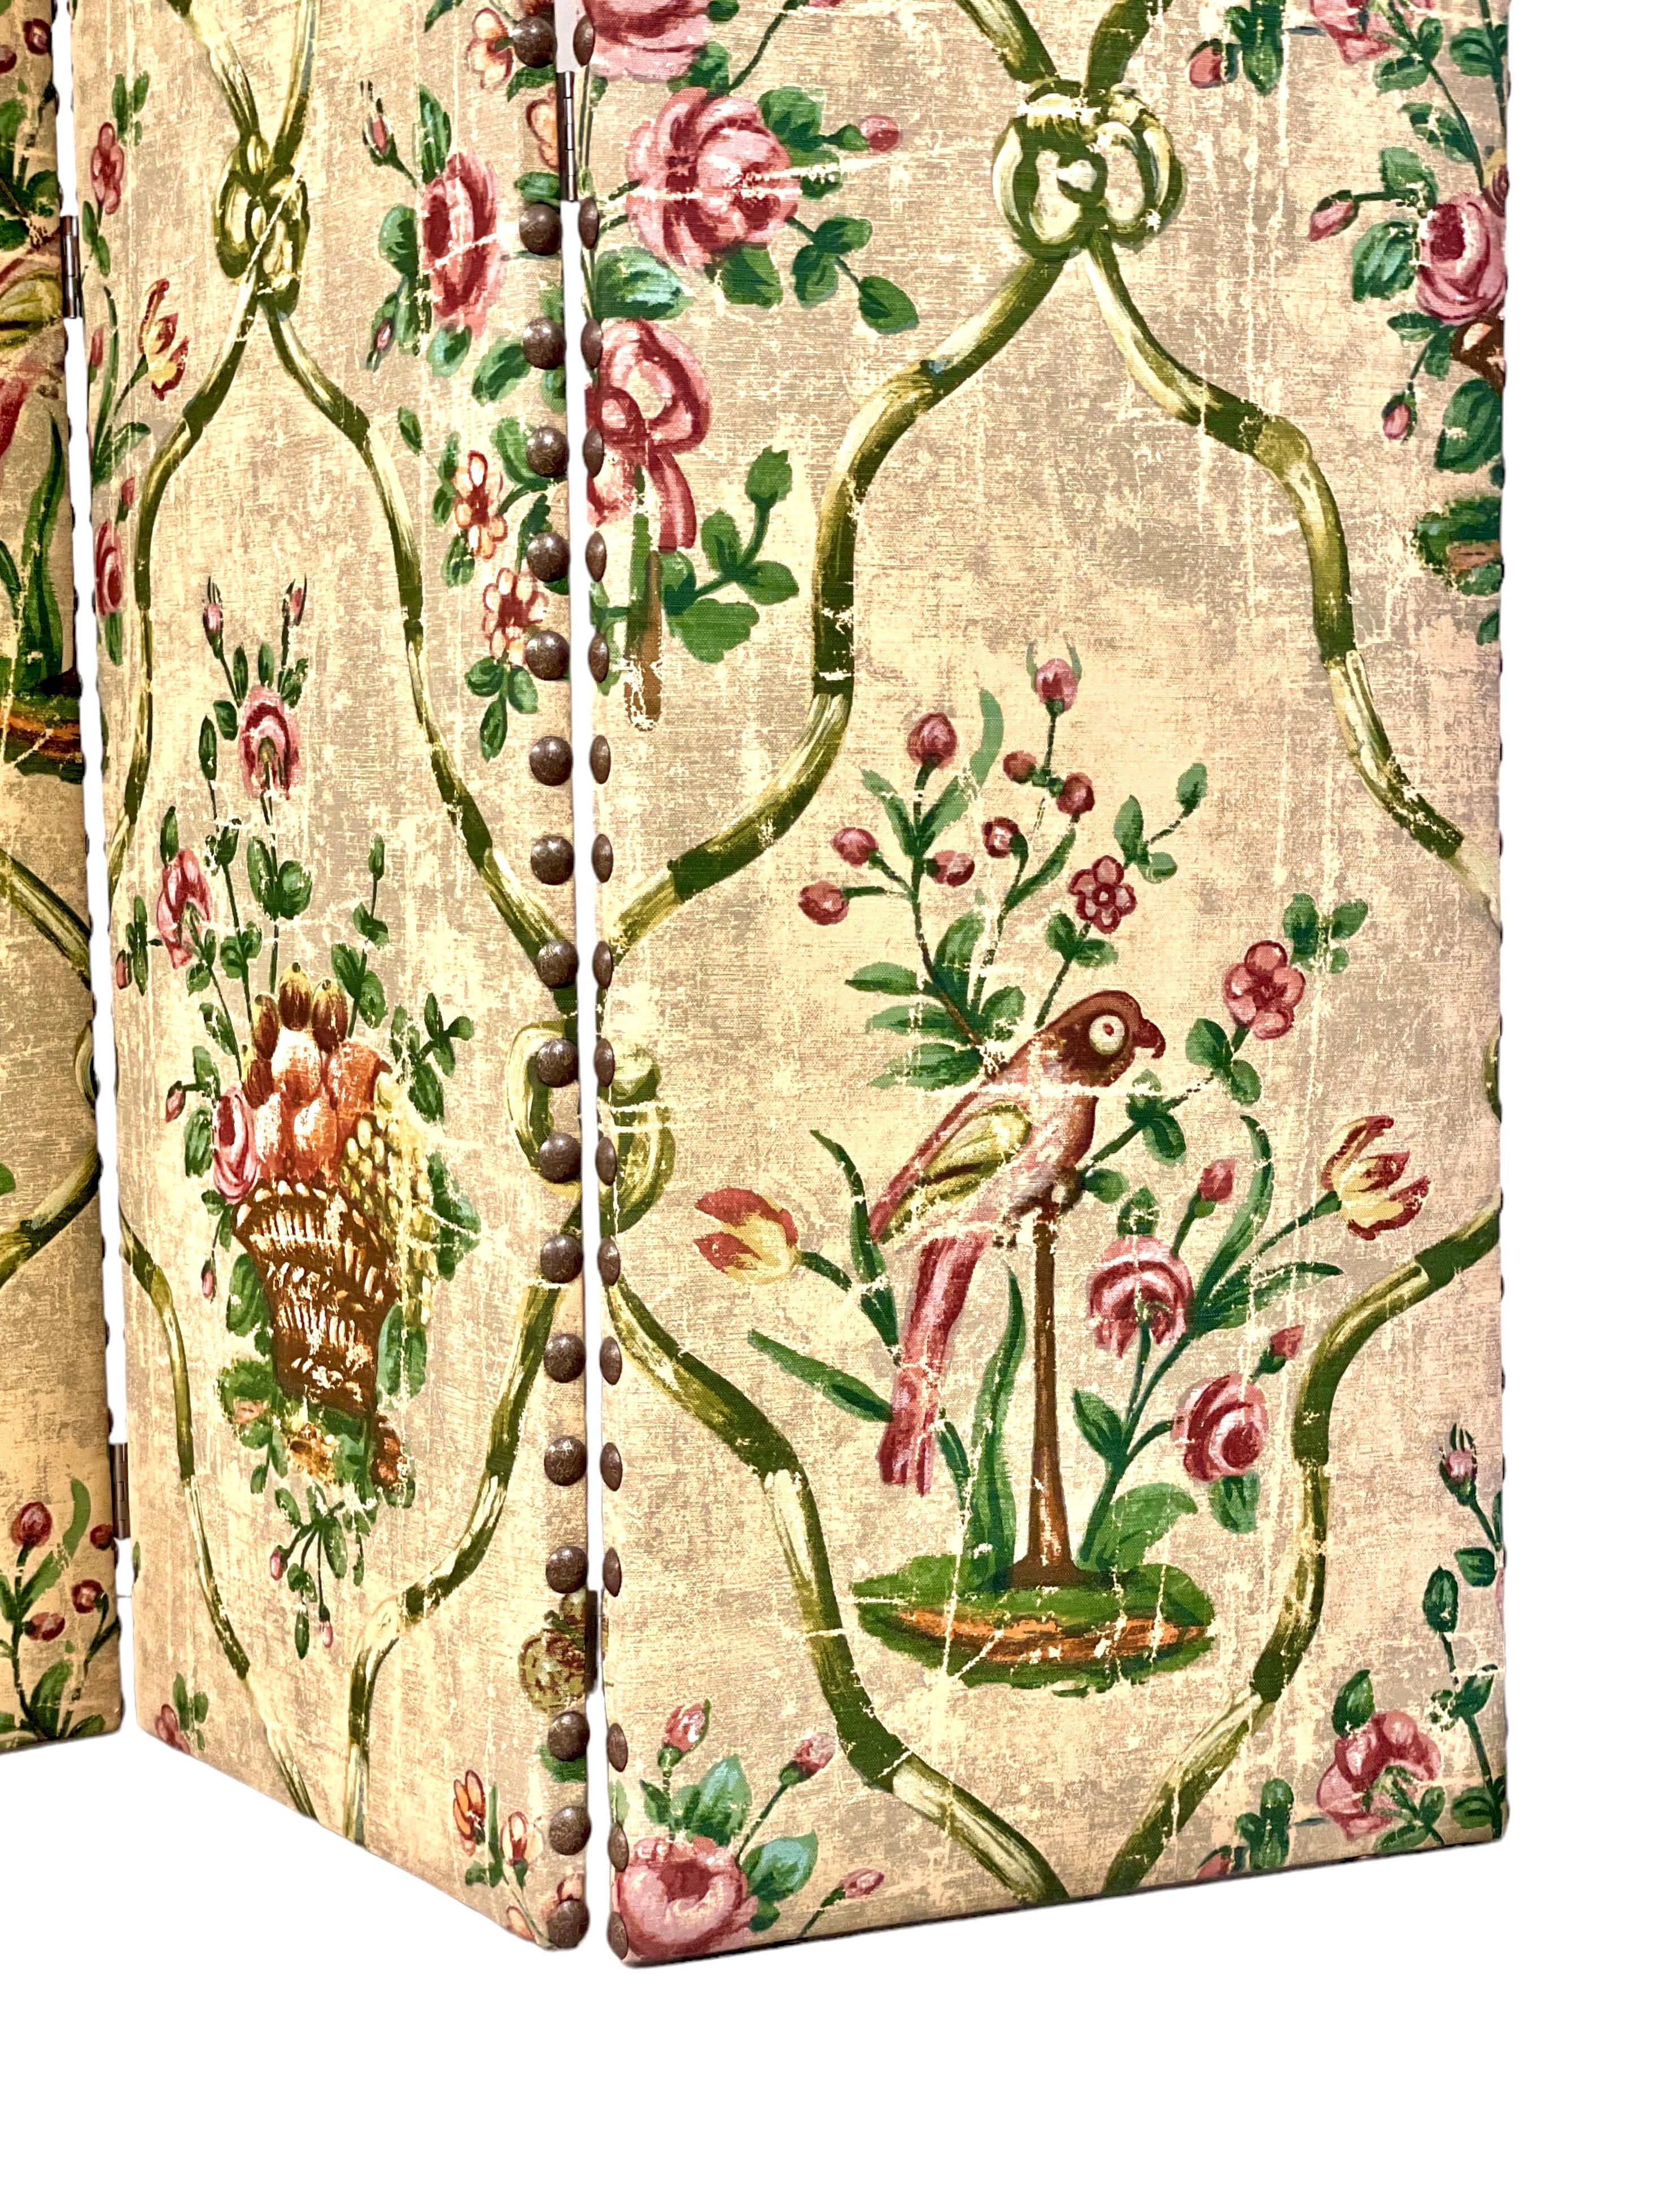 Une charmante petite séparation en trois parties de style XVIIIe siècle, fabriquée à partir d'un tissu tendu sur un cadre en bois et habilement imprimé d'une reproduction délibérée d'un motif floral joliment vieilli. Datant du XXe siècle, ce